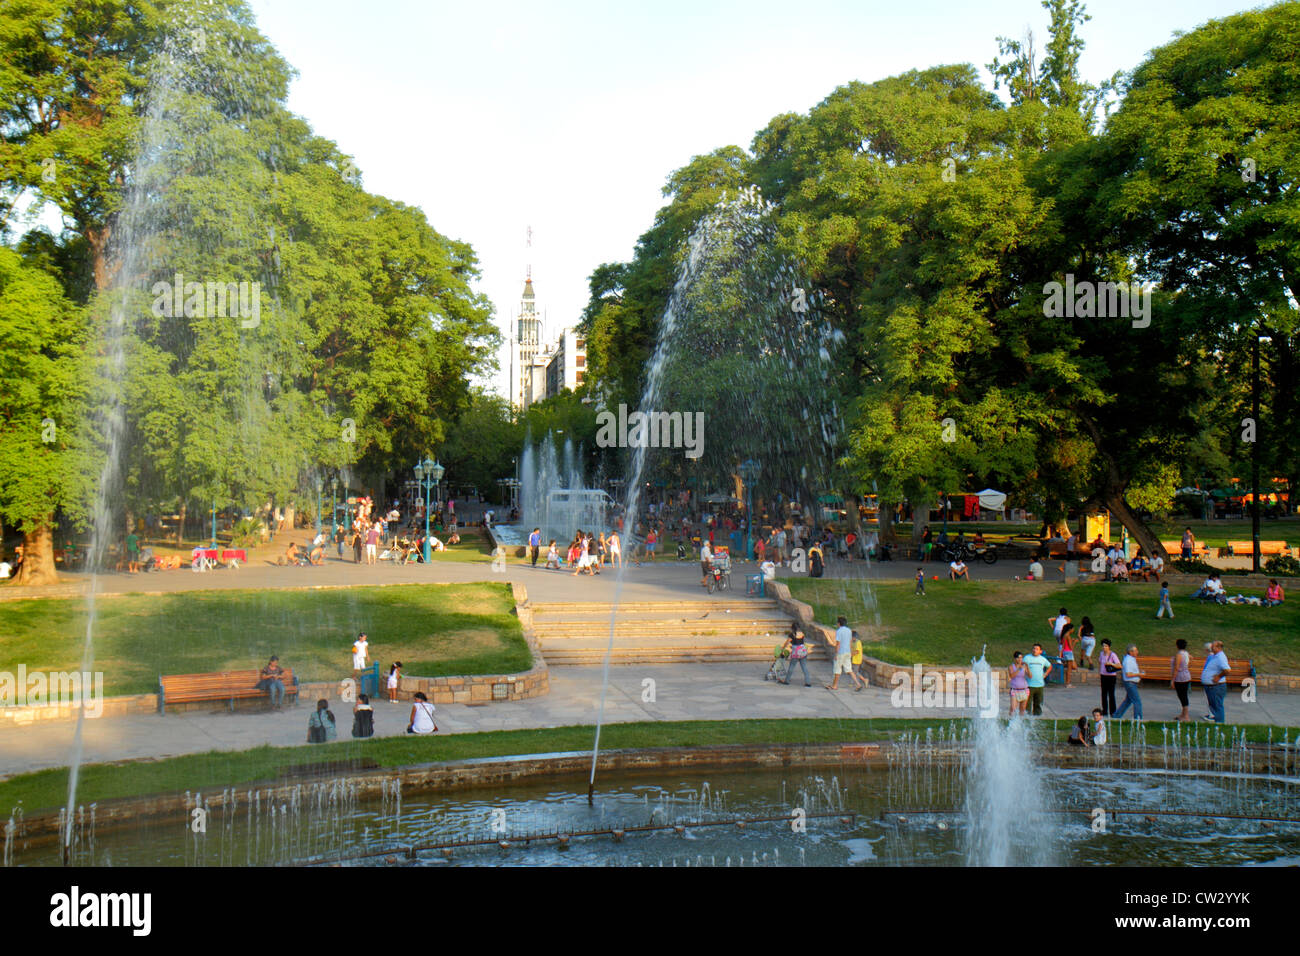 Mendoza Argentina, Plaza Independencia, parco pubblico, fontana, spazio verde, folla, affollato, getto d'acqua, fontana pubblica, circolare, cerchio, alberi, vegetazione, leisur Foto Stock